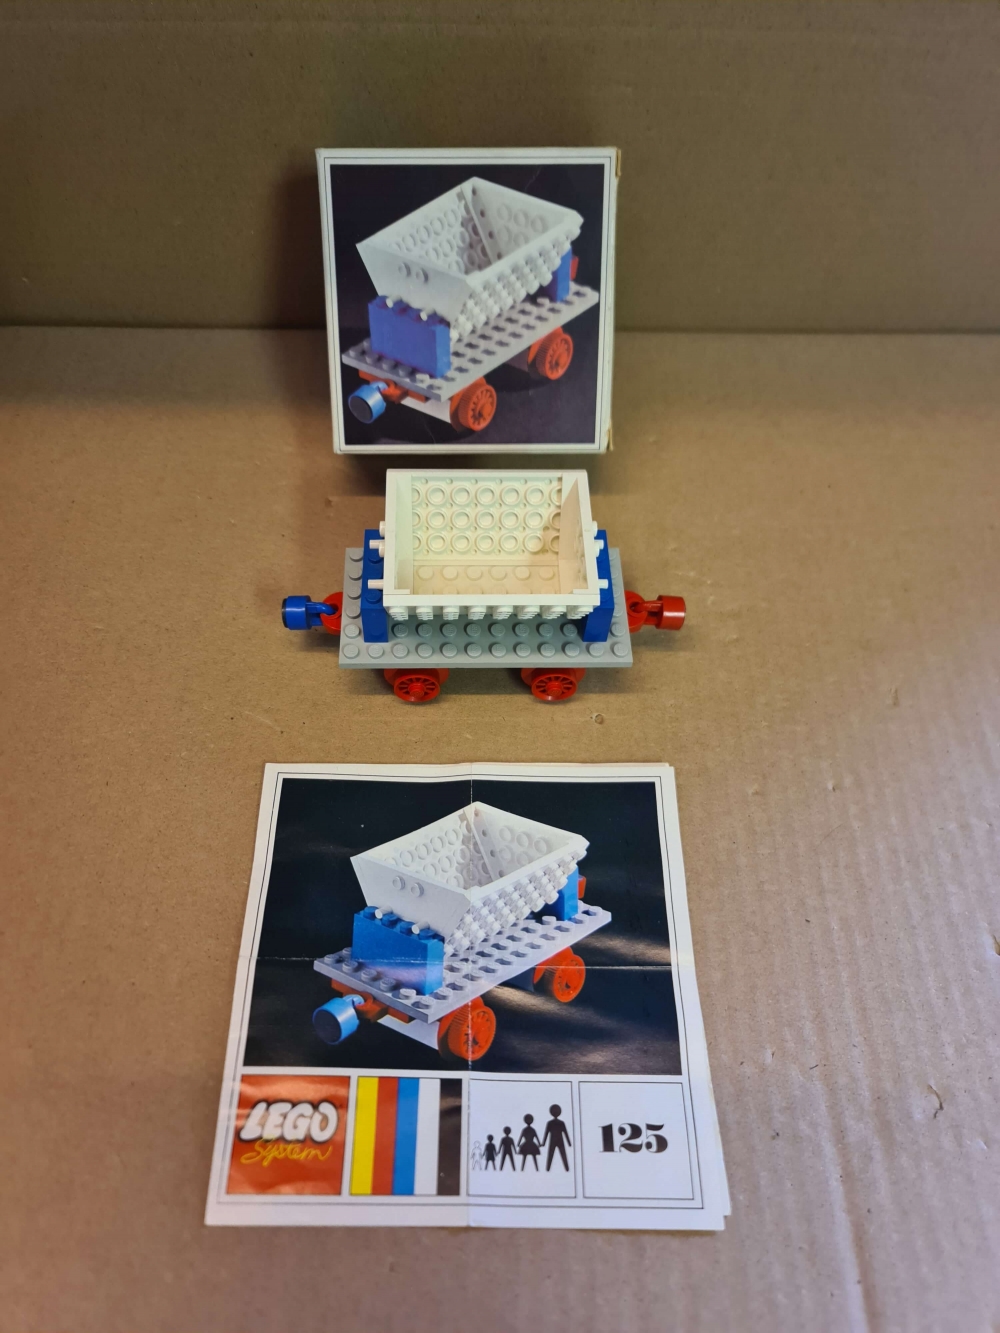 Sett 125 fra Lego Train : 4.5V serien.
Pefekt stand. 
Komplett med manual og eske.